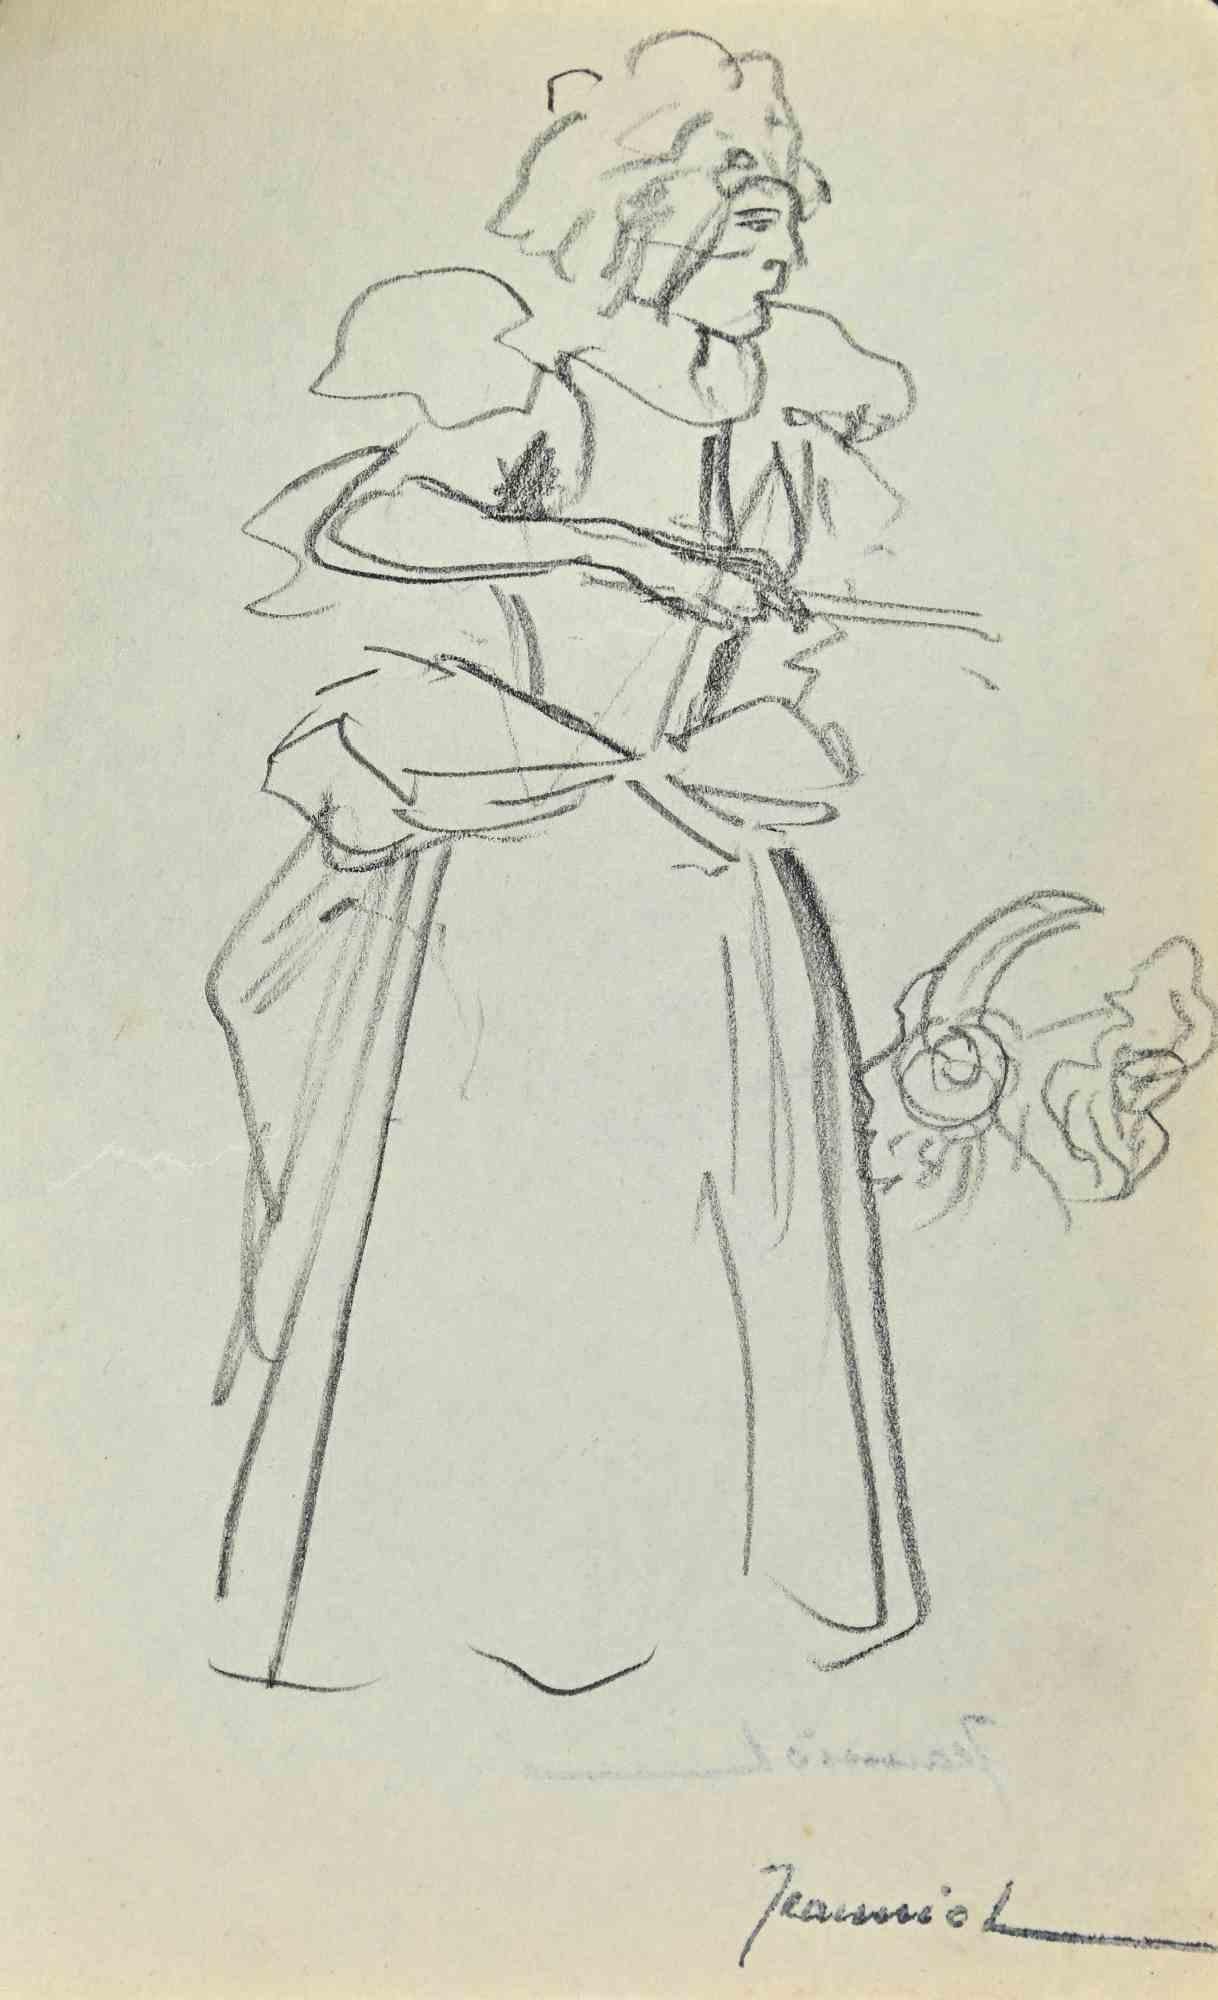 Frau ist eine Original-Bleistiftzeichnung von Pierre Georges Jeanniot (1848-1934).

Handsigniert  und einige Anmerkungen des Künstlers in der unteren linken Ecke.

Guter Zustand.

Pierre-Georges Jeanniot (1848-1934) war ein